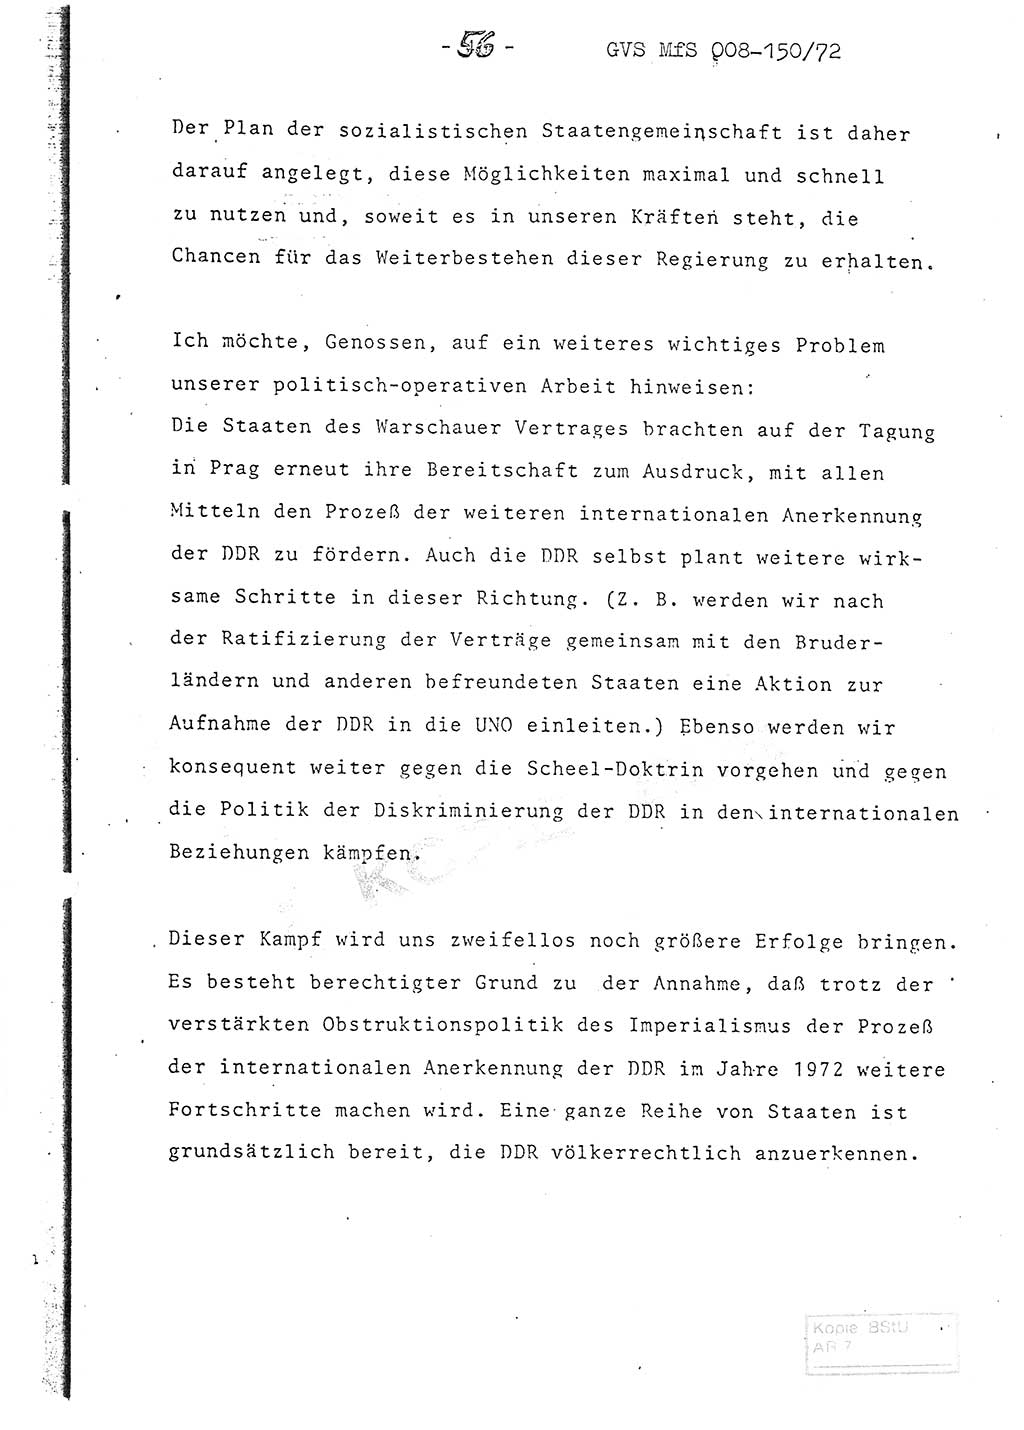 Referat (Entwurf) des Genossen Minister (Generaloberst Erich Mielke) auf der Dienstkonferenz 1972, Ministerium für Staatssicherheit (MfS) [Deutsche Demokratische Republik (DDR)], Der Minister, Geheime Verschlußsache (GVS) 008-150/72, Berlin 25.2.1972, Seite 56 (Ref. Entw. DK MfS DDR Min. GVS 008-150/72 1972, S. 56)